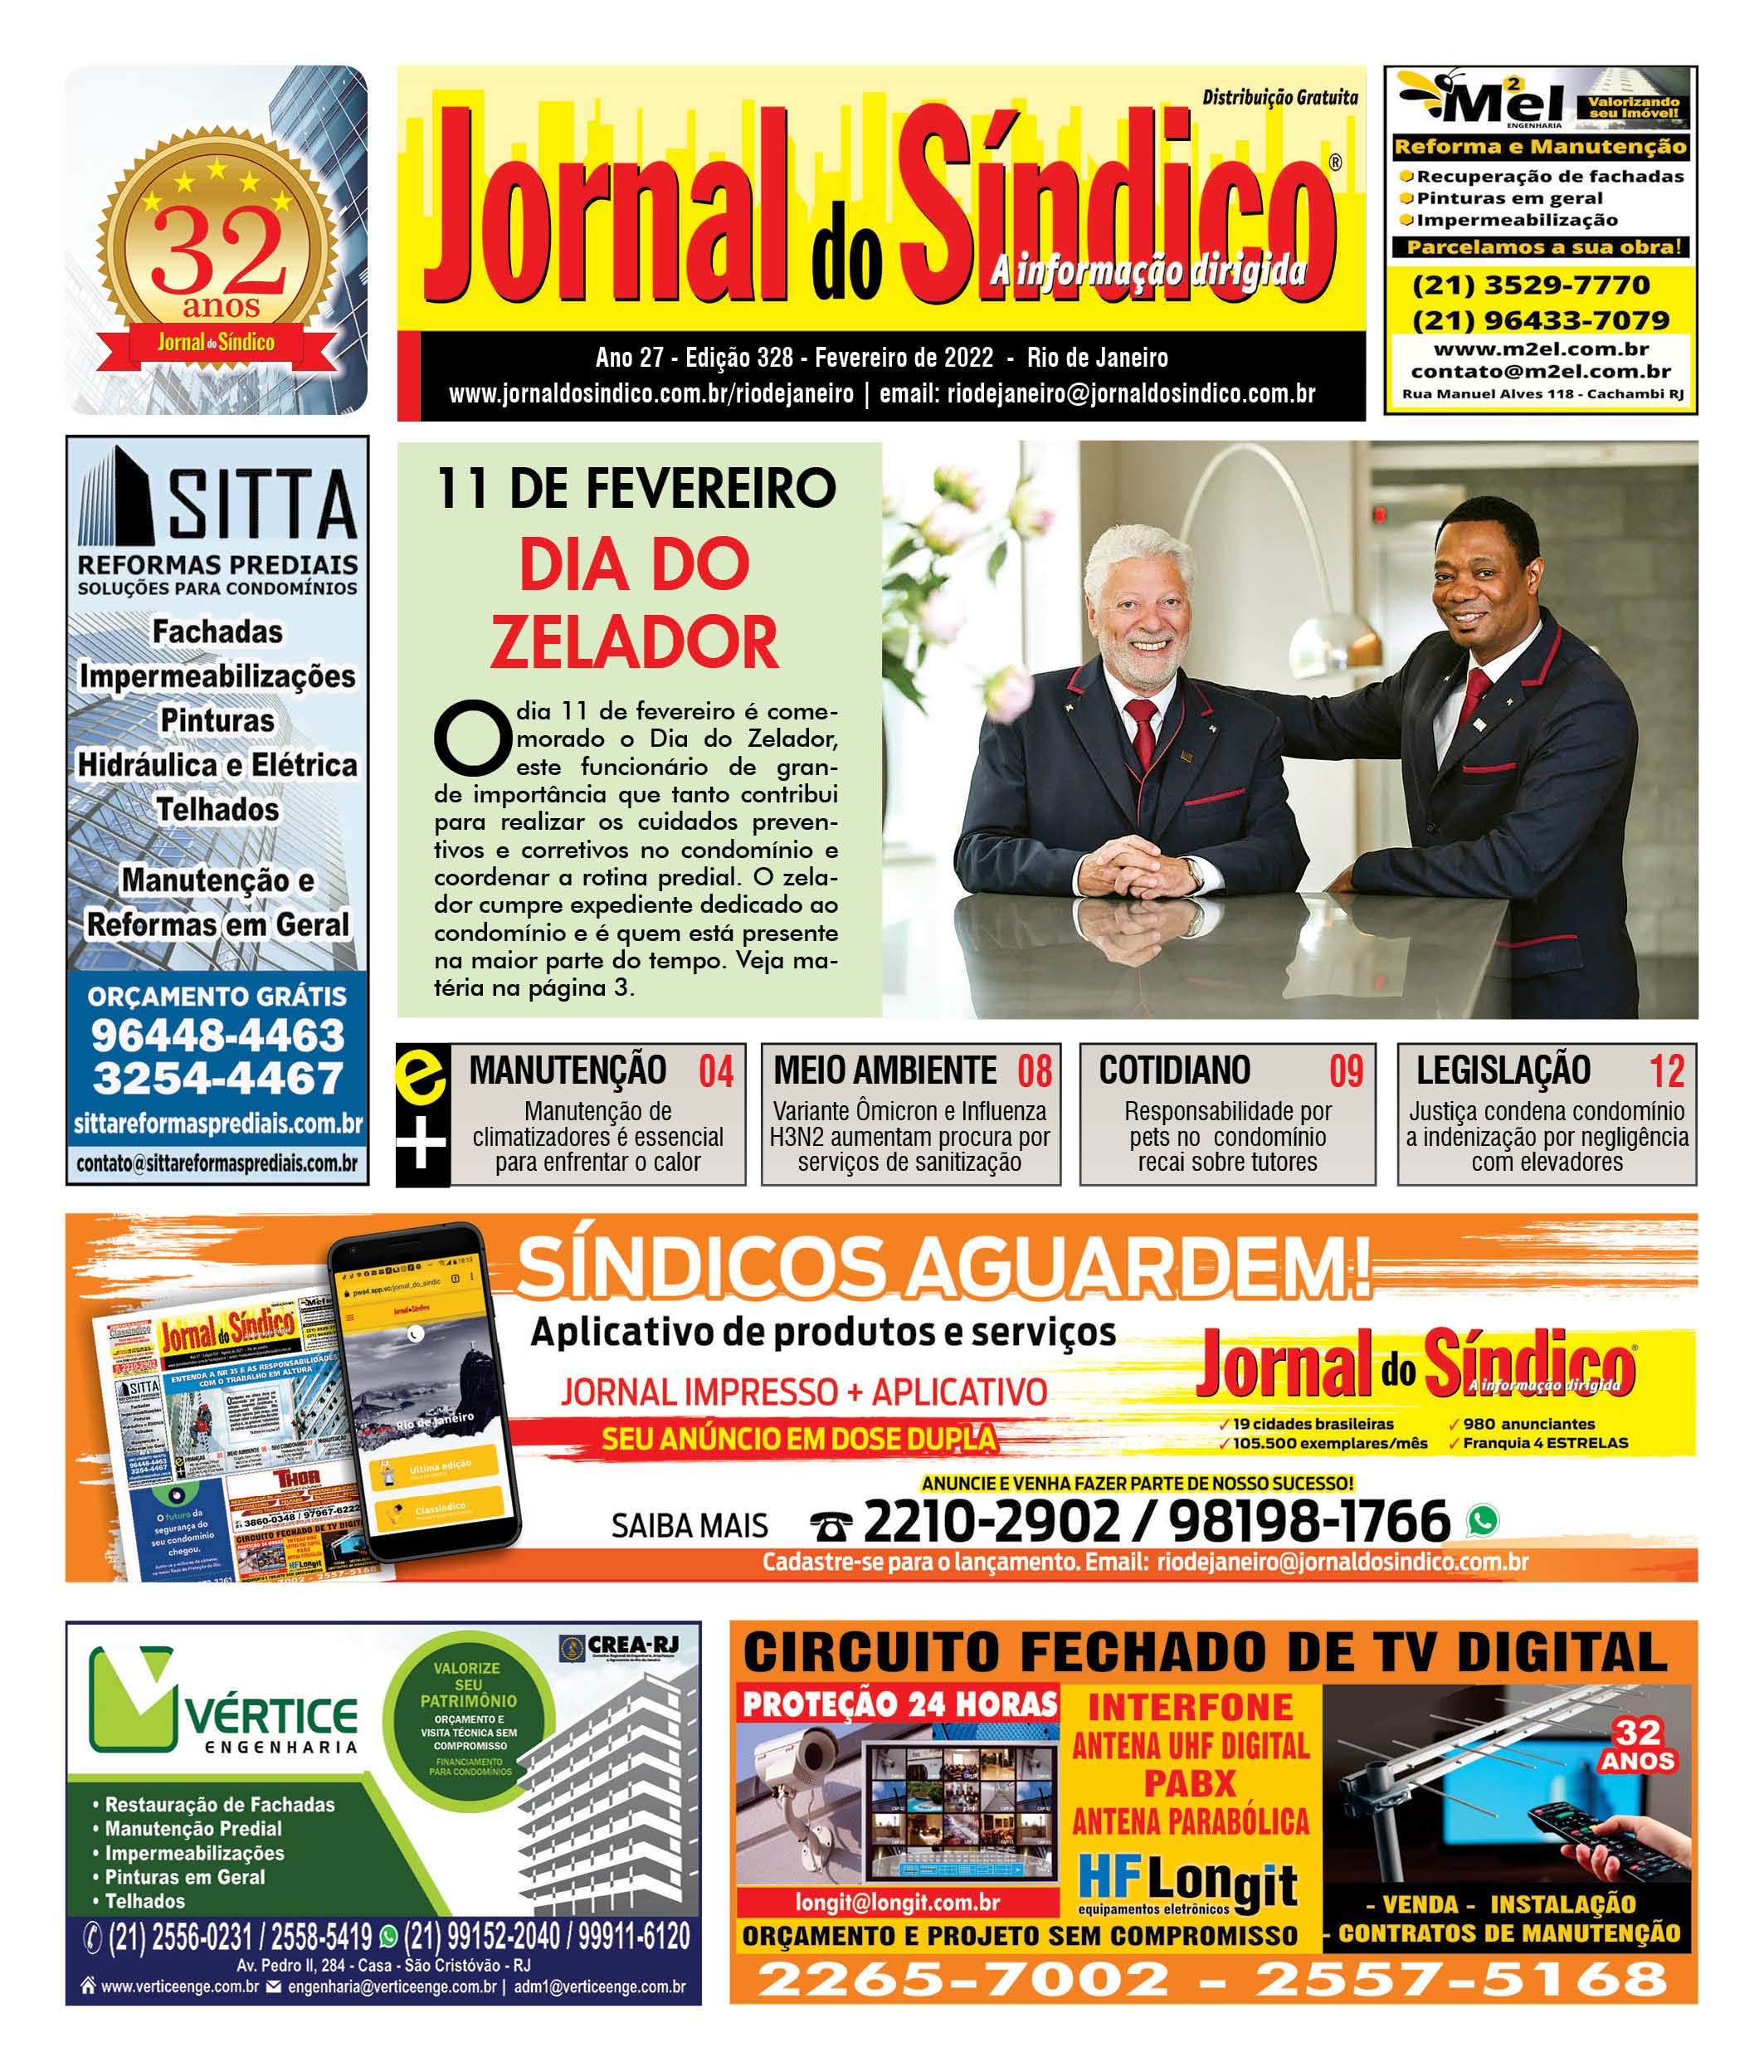 JSRJ 328 - FEVEREIRO DE 2022 - 12 paginas_Grafica